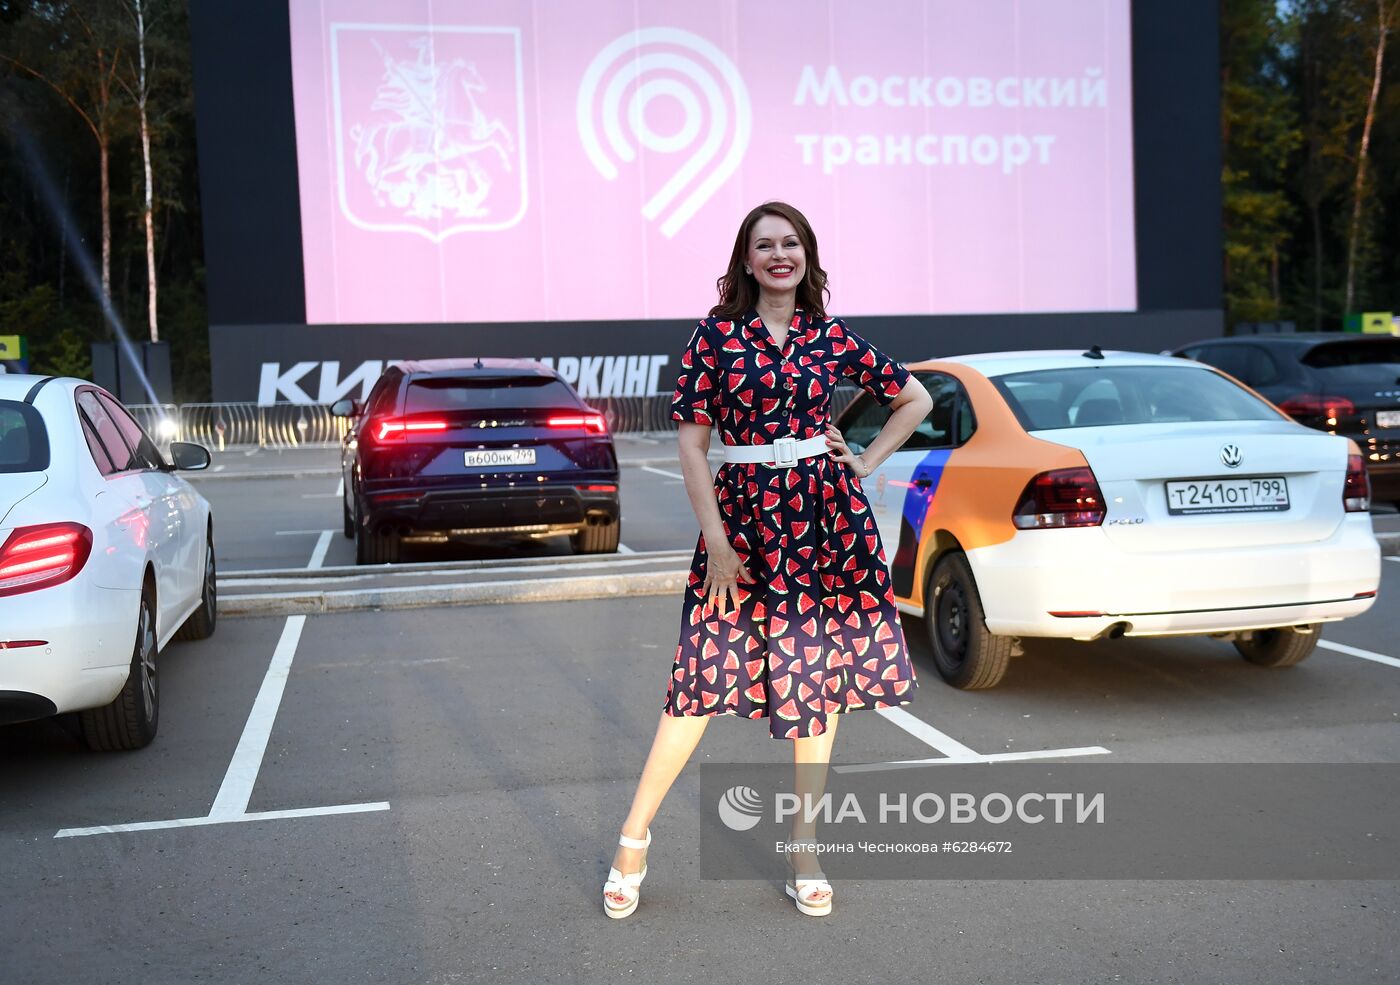 Вечеринка по случаю открытия кинопаркинга в Москве